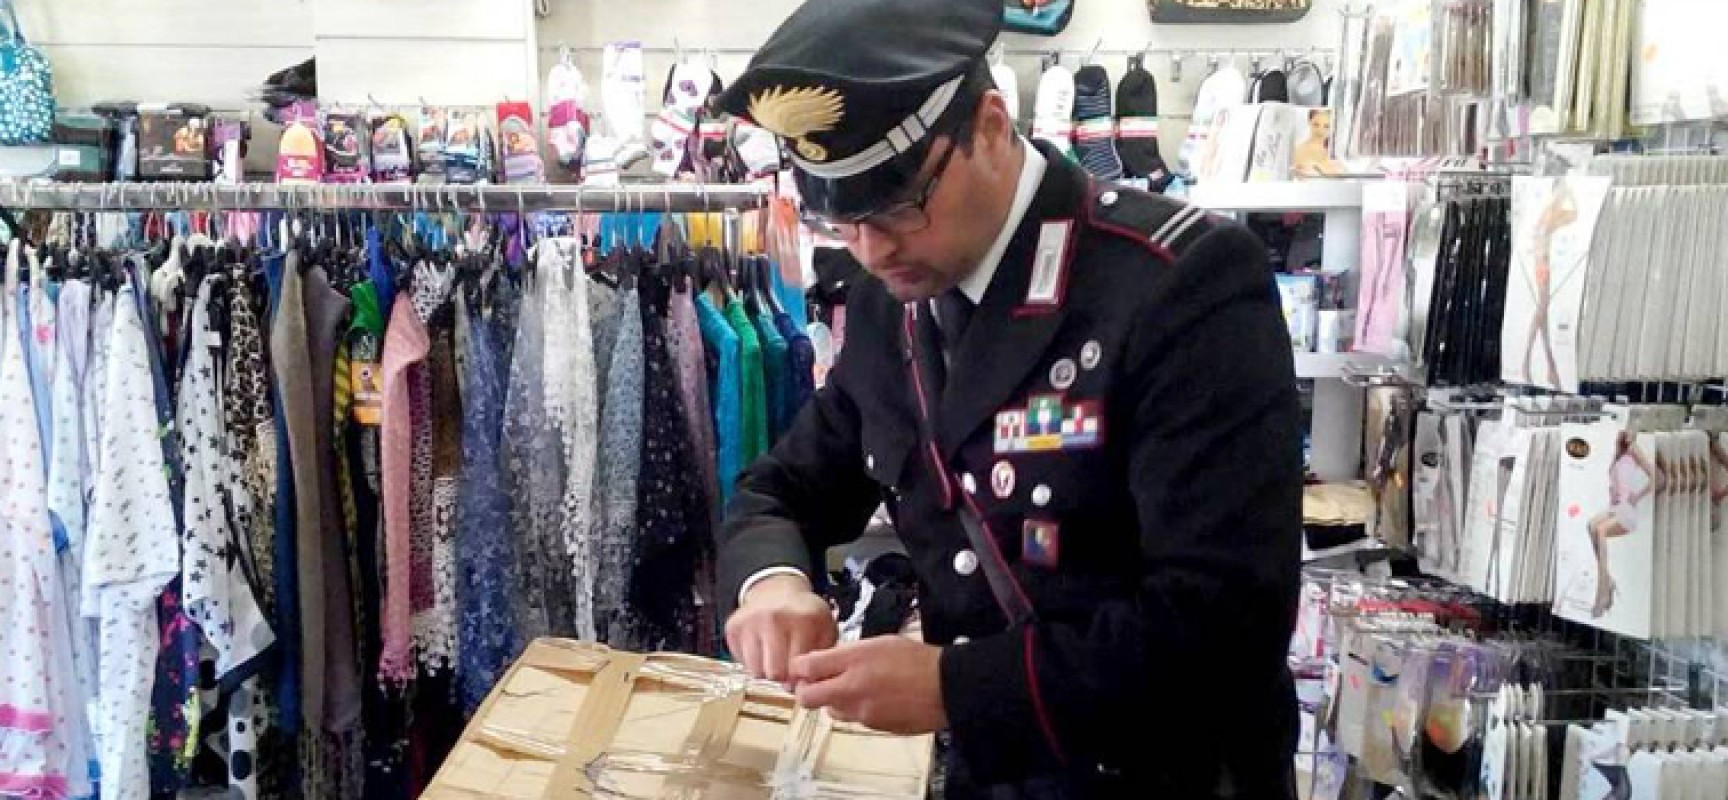 Articoli senza marchio “Ce”, maxi sequestro dei Carabinieri in negozi cinesi di Bisceglie e Trani